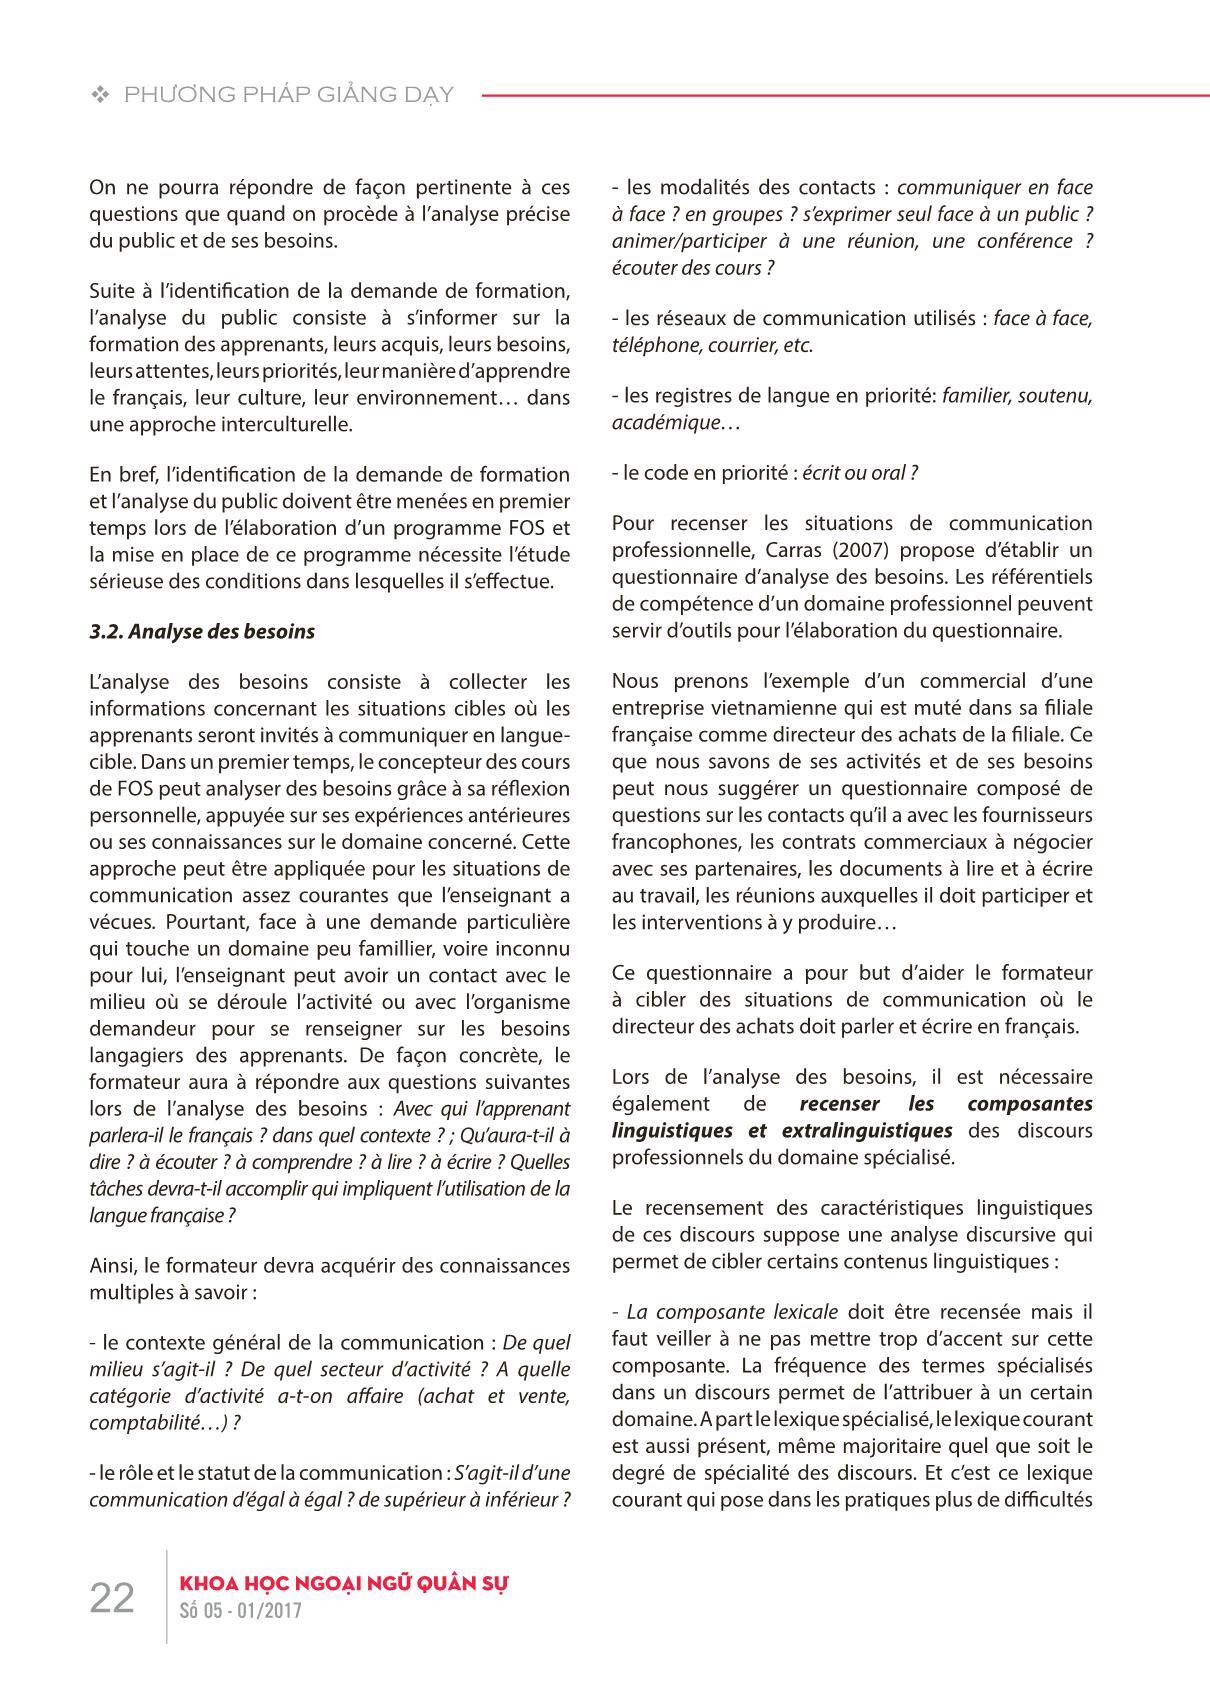 Phương pháp giảng dạy tiếng Pháp theo mục tiêu chuyên biệt trang 4